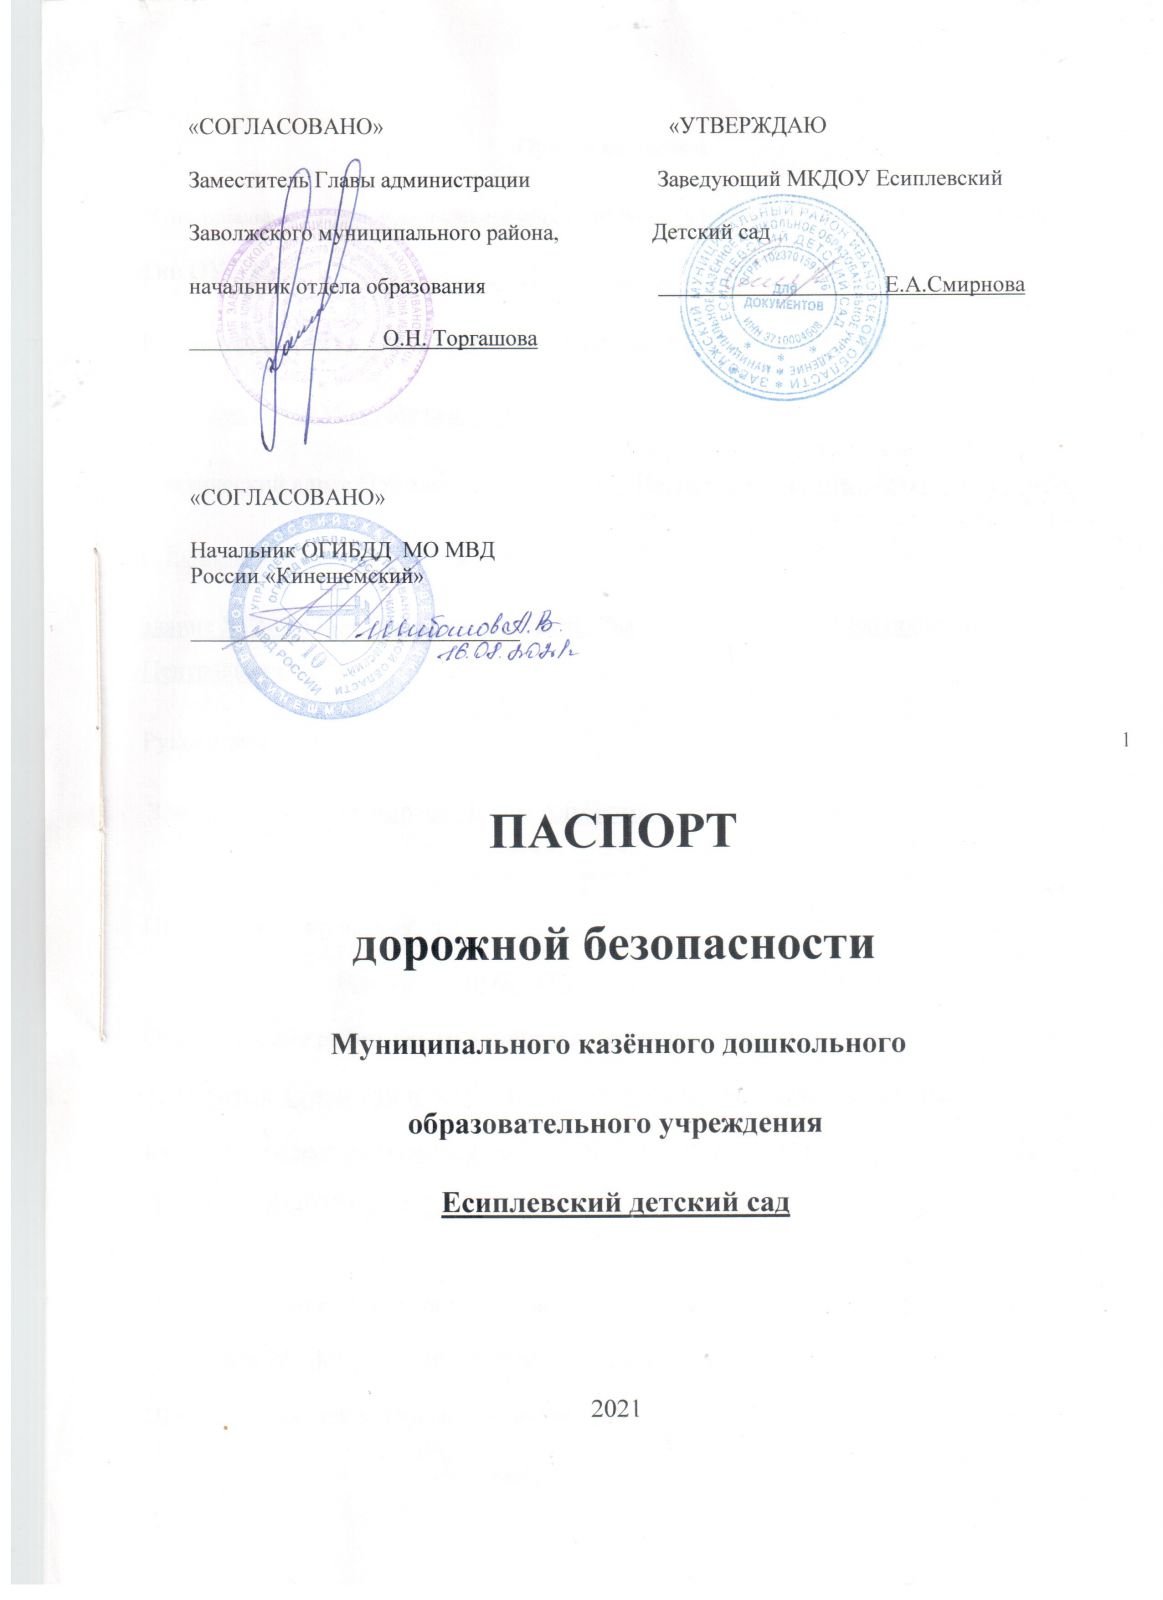 pasport-dorozhnoy-bezopasnosti-2021.-1-